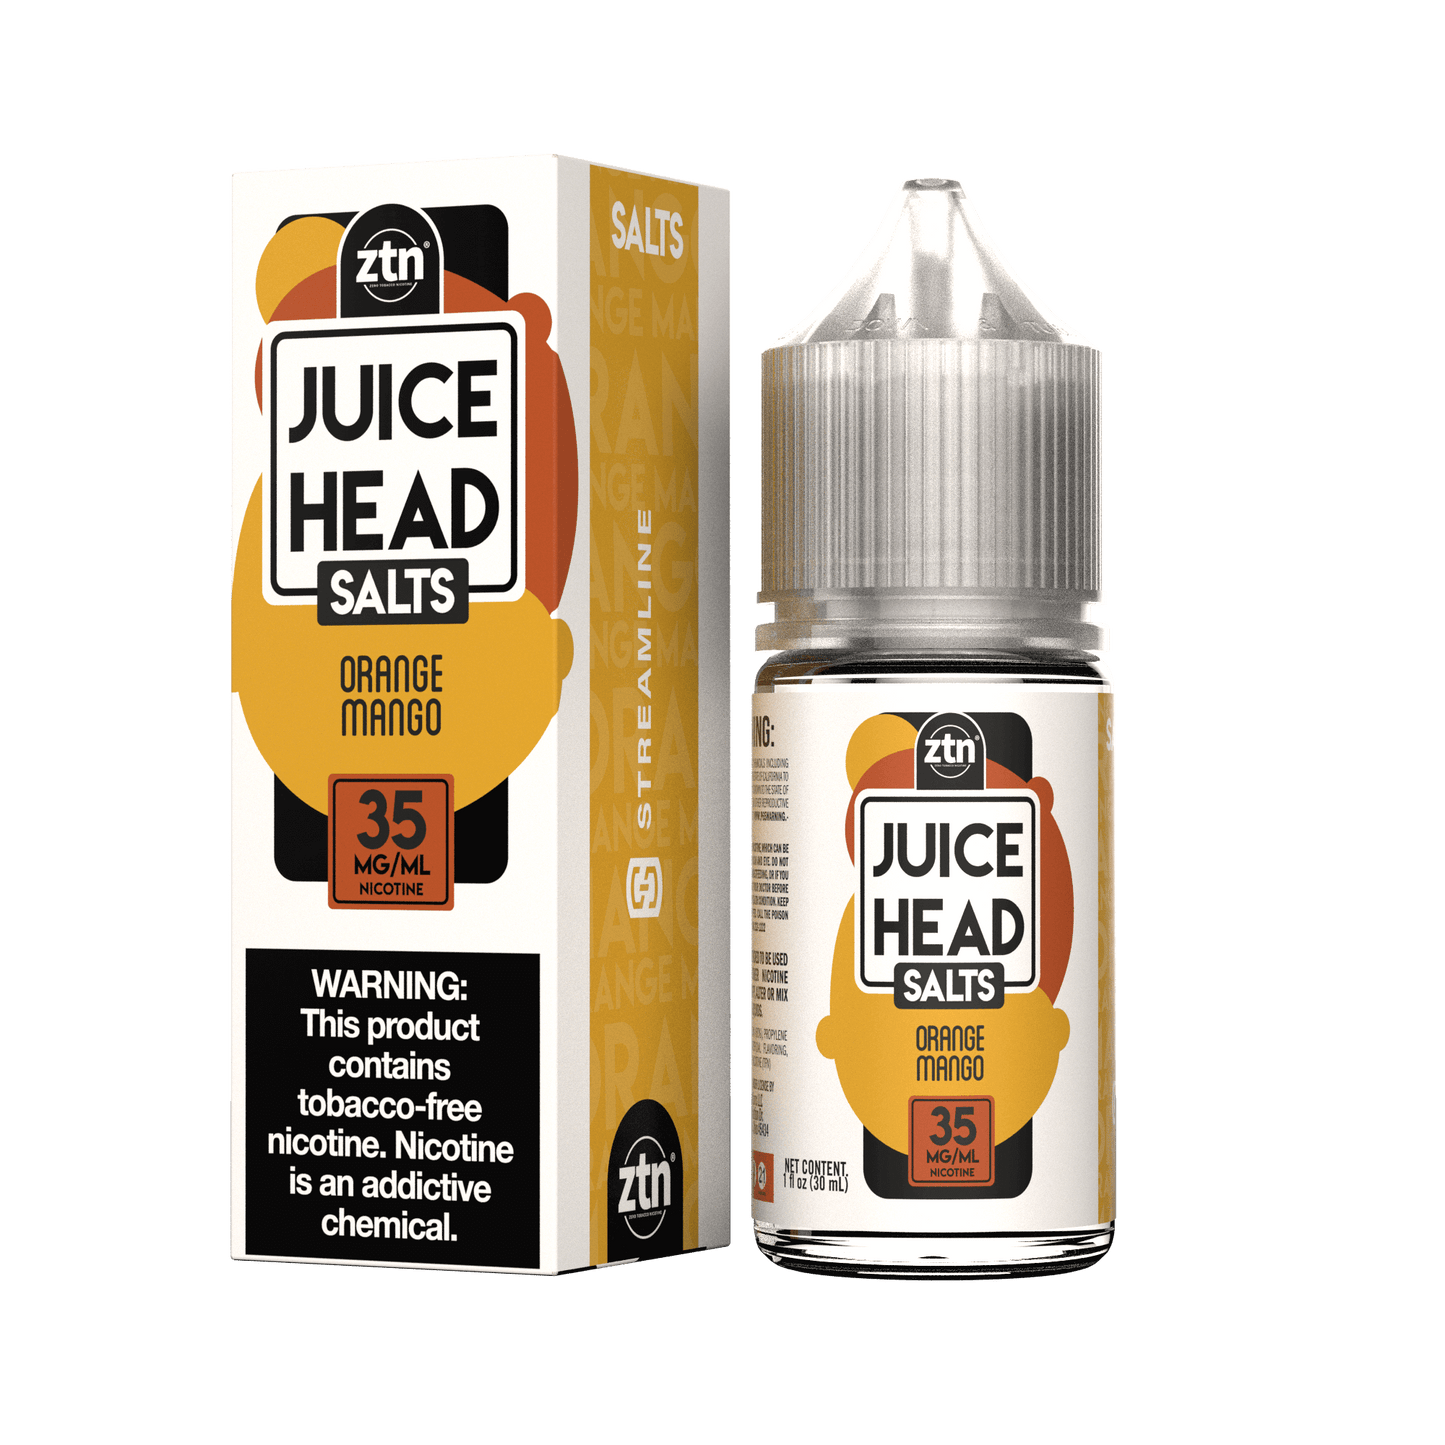 Juice Head Salt Series E-Liquid 30mL (Salt Nic)| Orange Mango with packaging